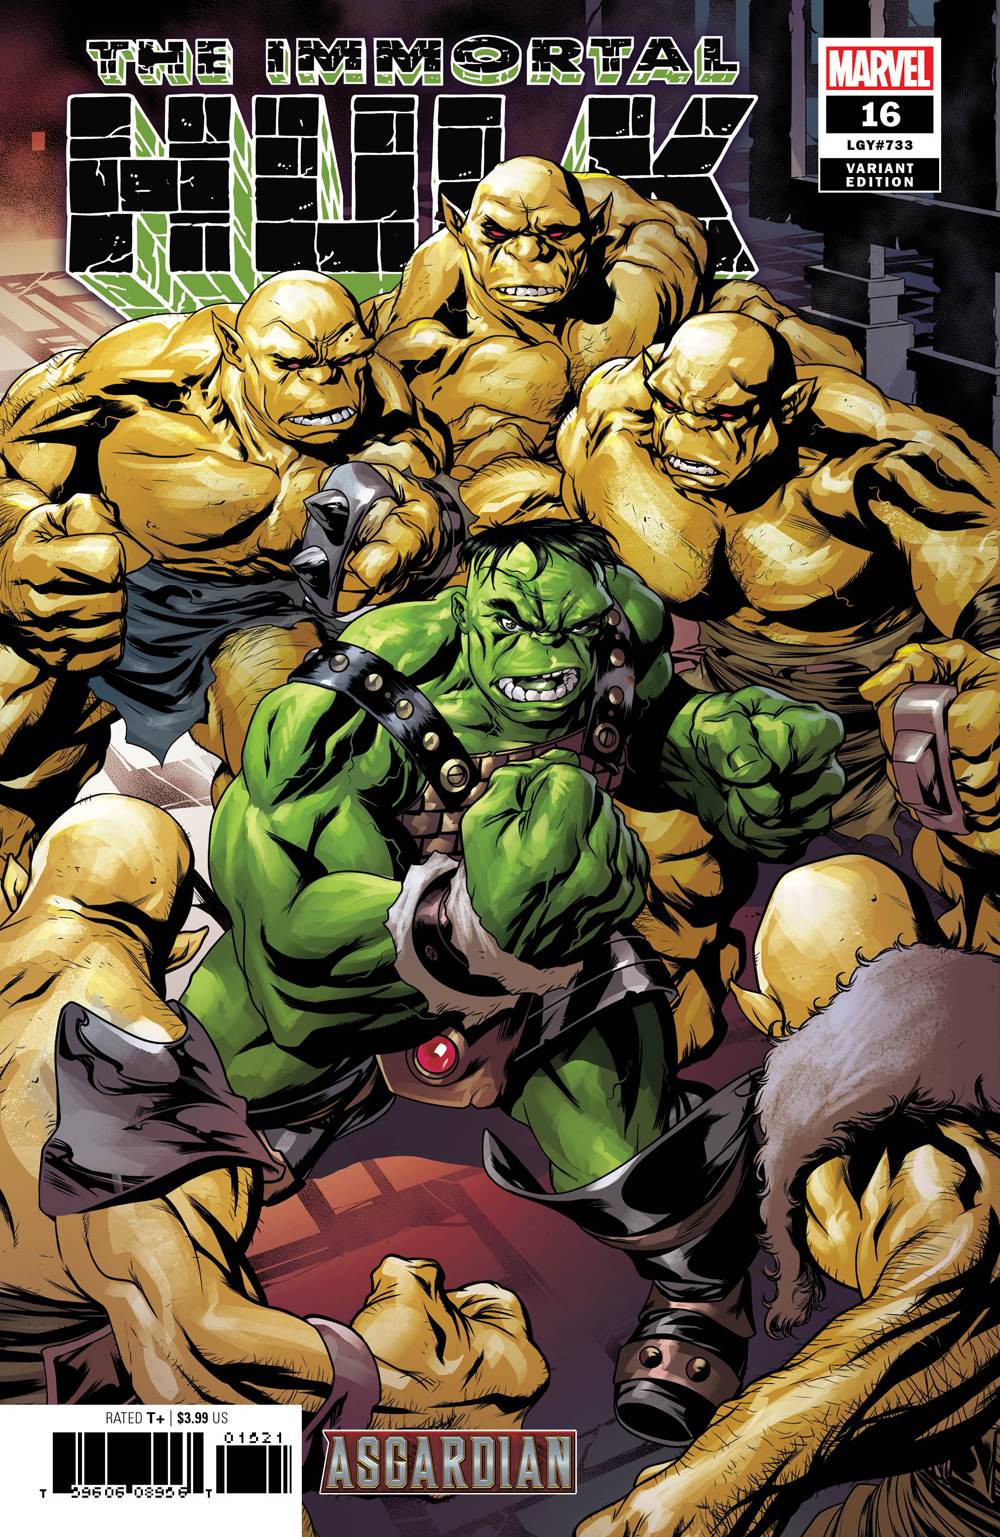 Immortal Hulk #15 (2018)